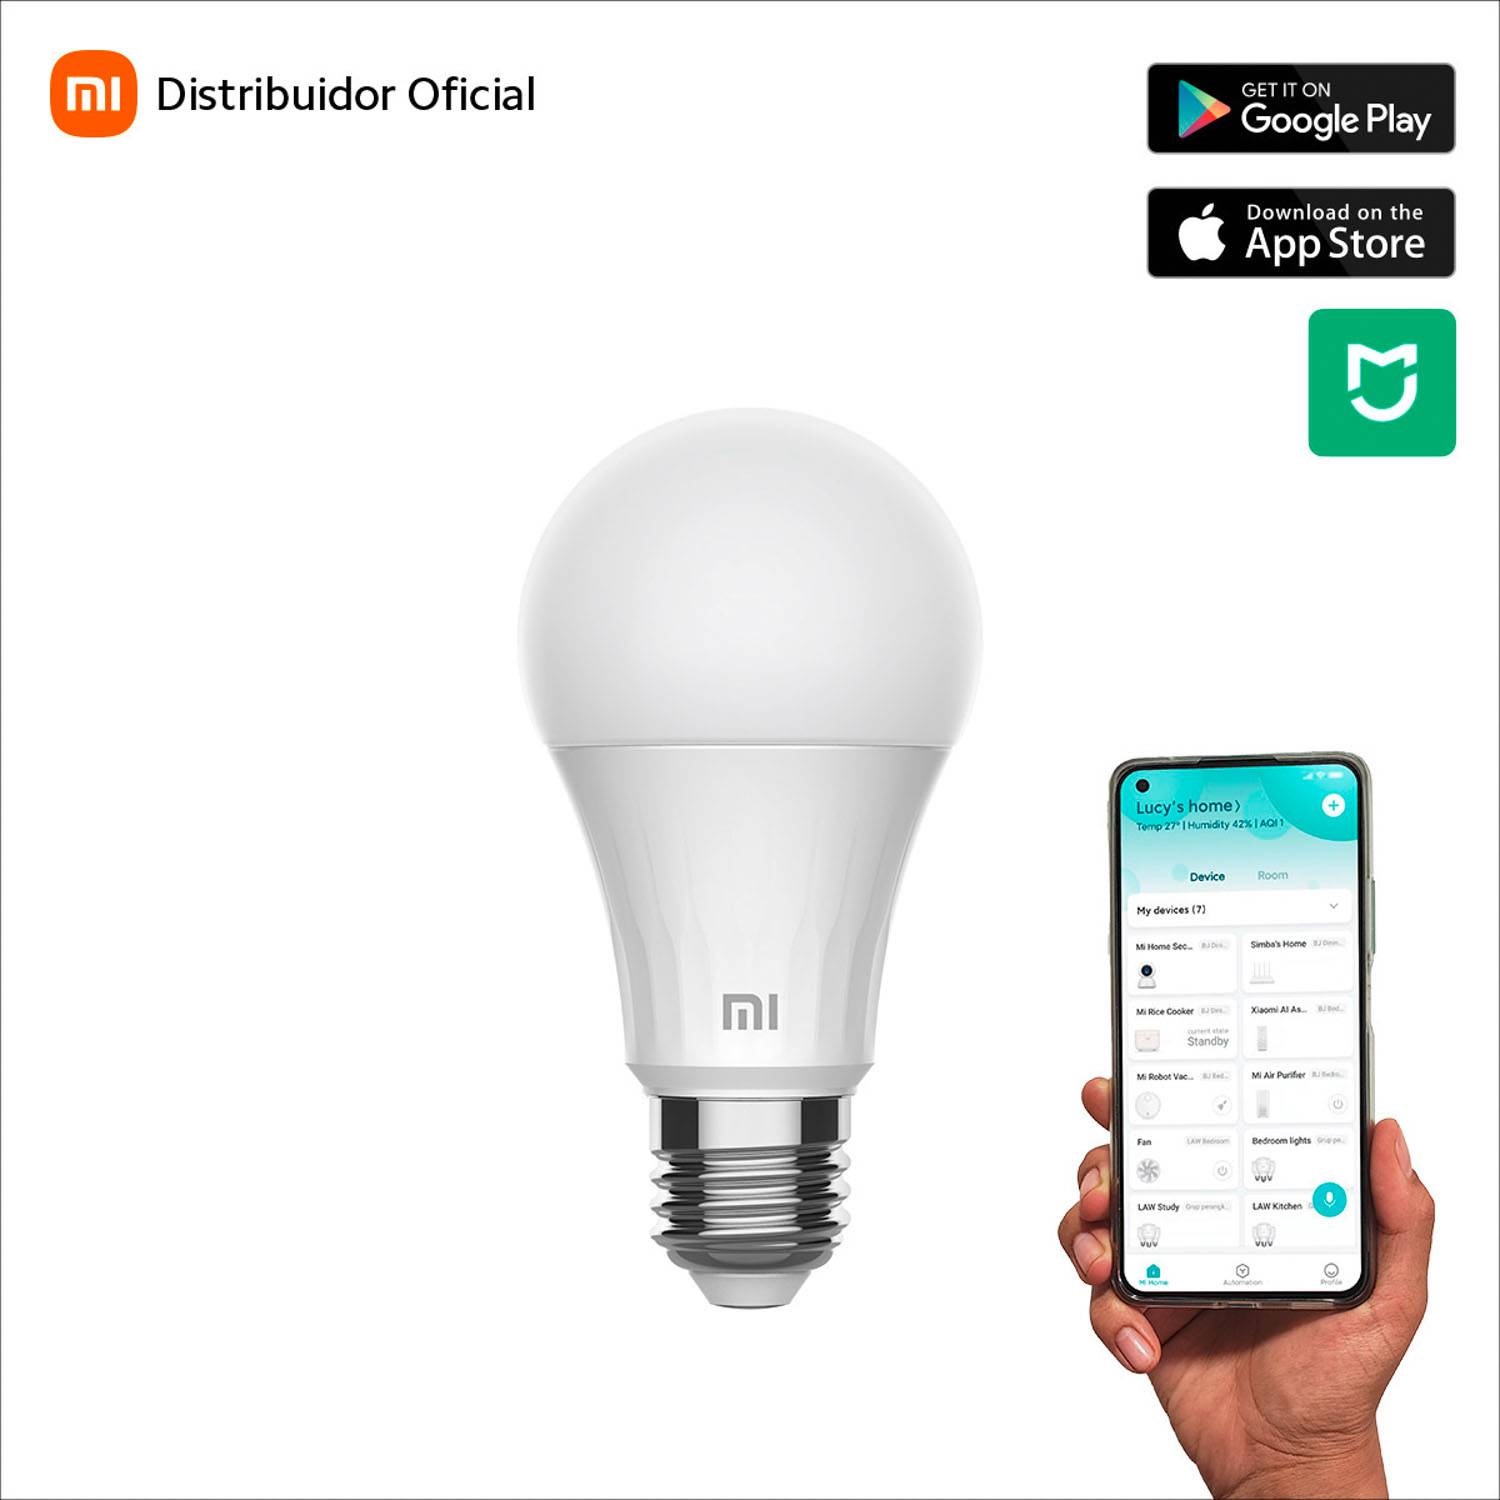 Xiaomi Mi LED Smart Bulb Bombilla Inteligente 8W E27 Blanco Cálido